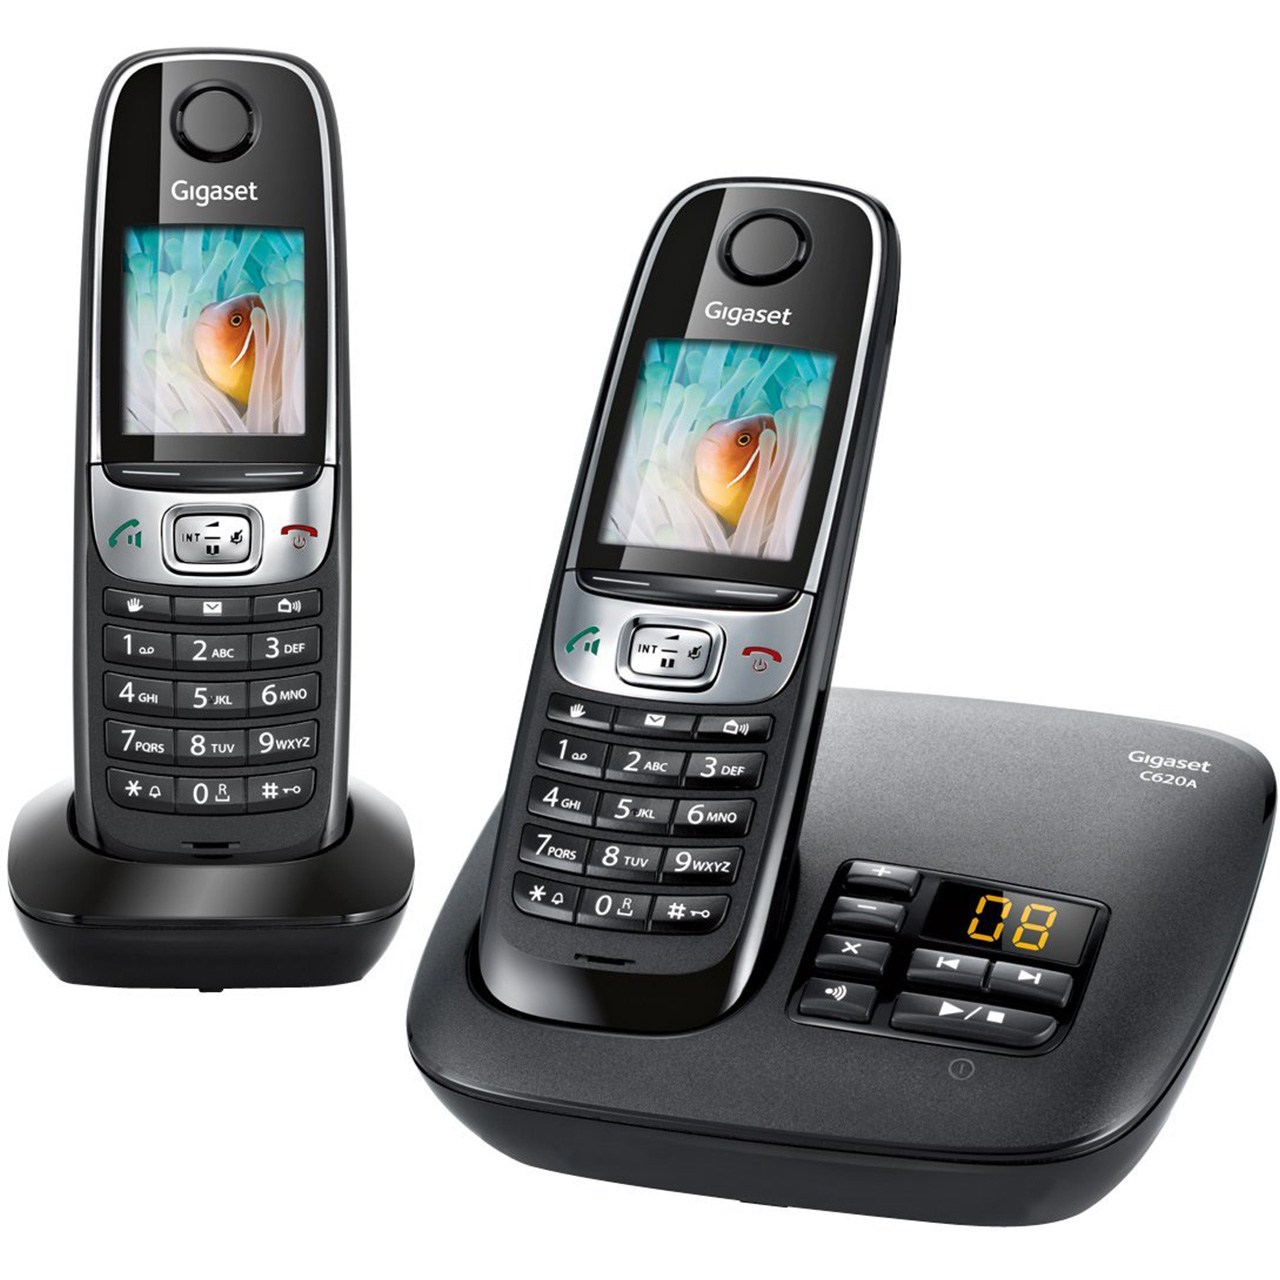 نکته خرید - قیمت روز تلفن بی سیم گیگاست مدل C620 A Duo خرید